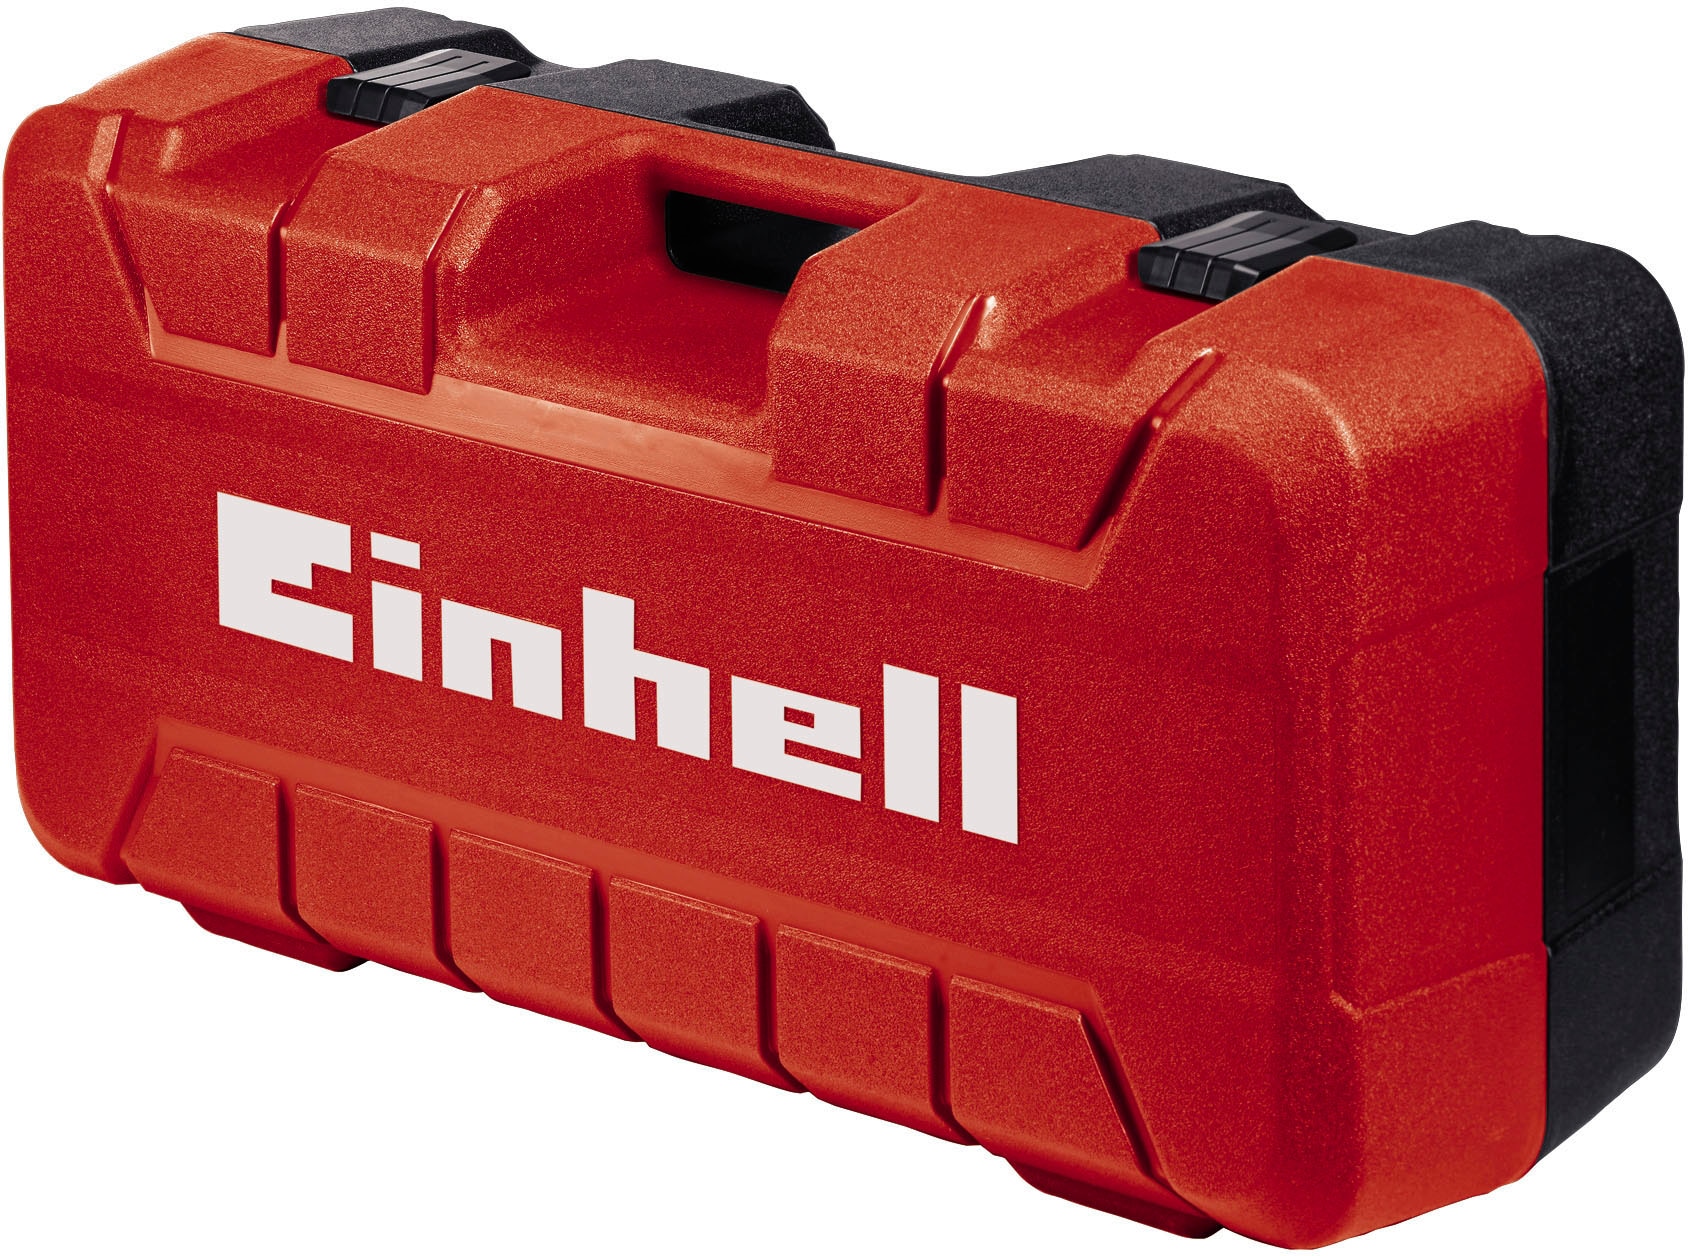 Einhell Werkzeugkoffer »E-Box L70/35«